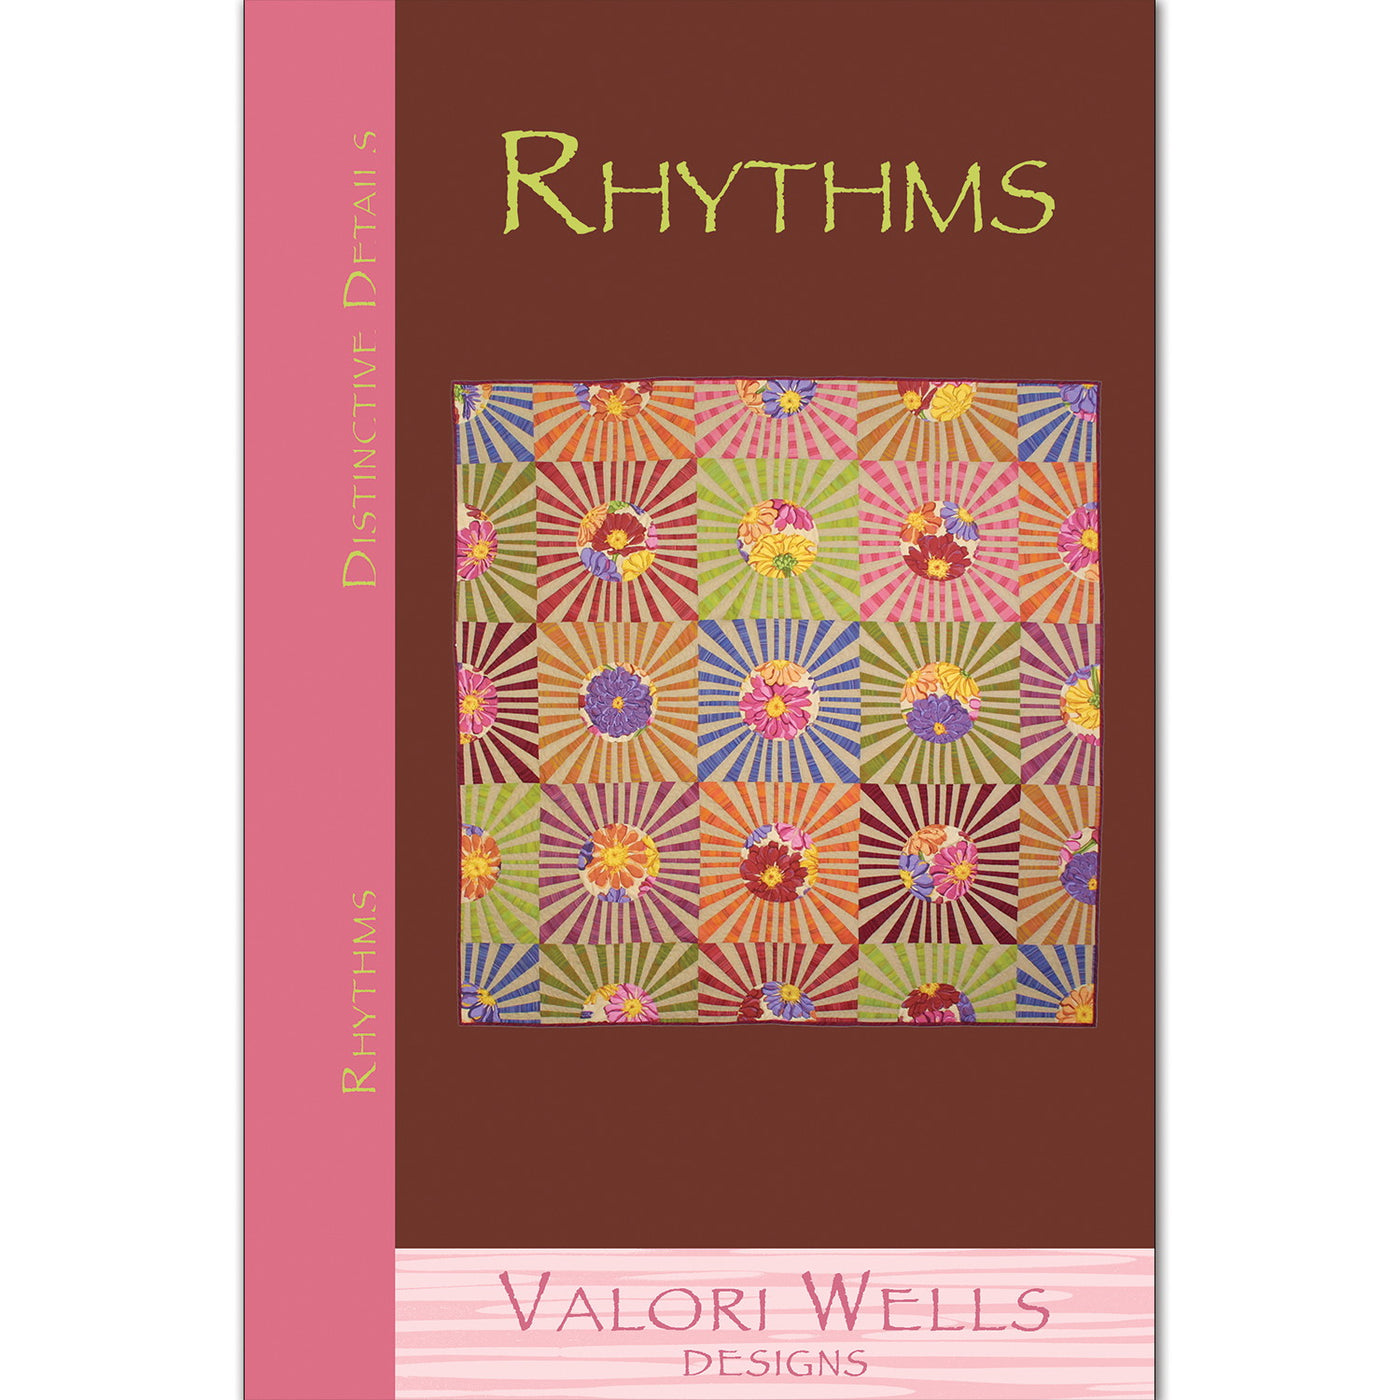 Rhythms by Valori Wells